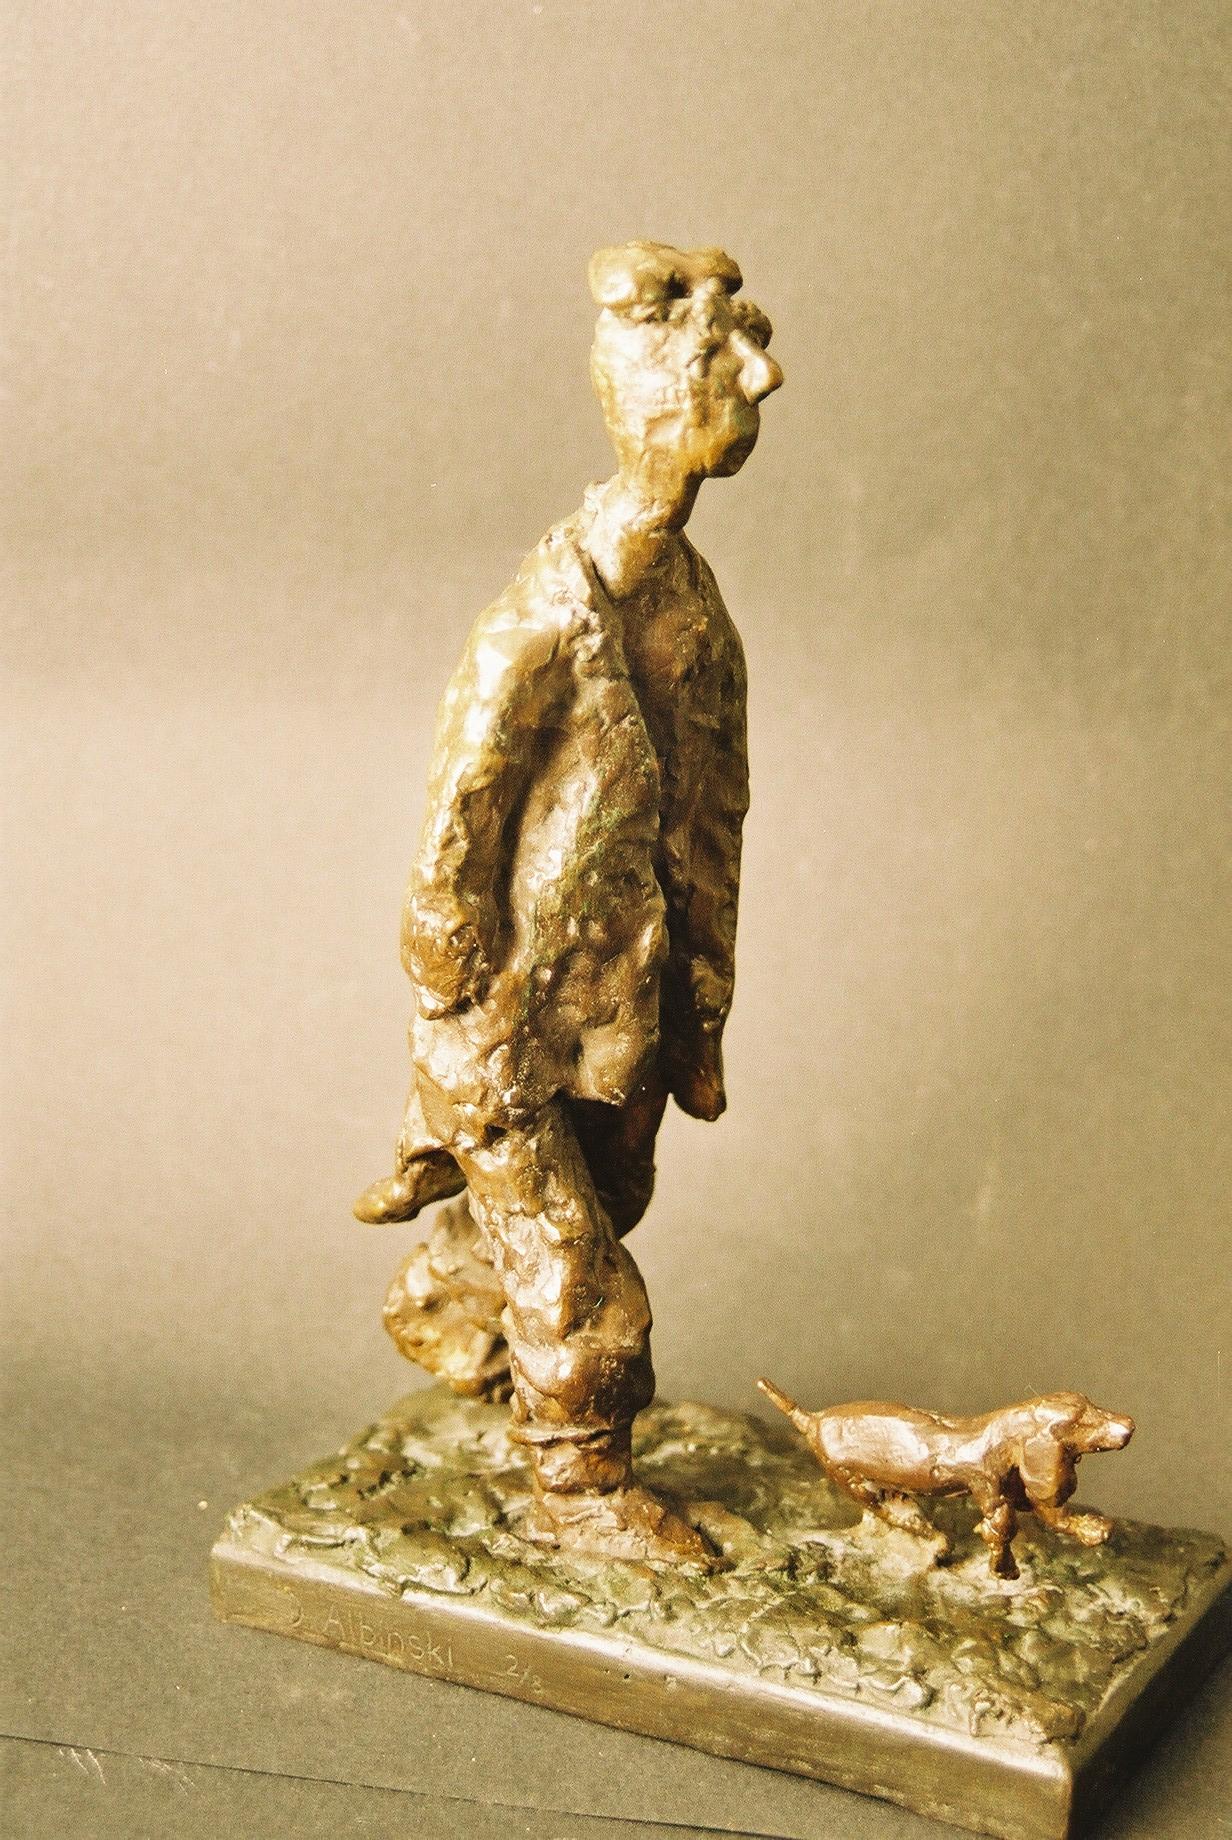 Polnische modernistische expressionistische Bronze-Kunstskulptur eines Läufers mit Hund in Bronze